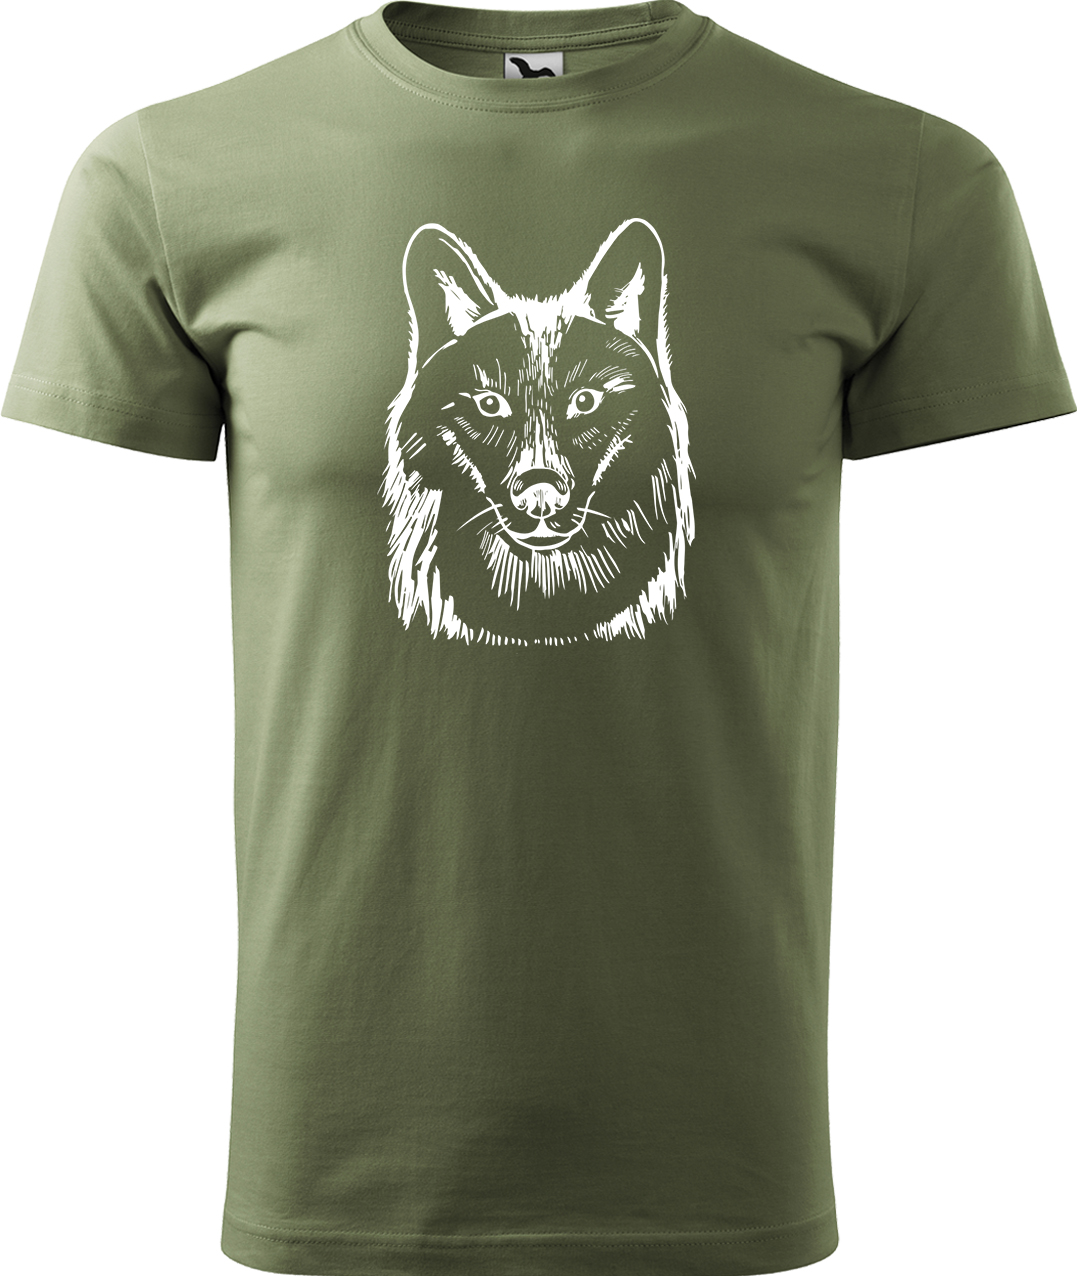 Pánské tričko s vlkem - Kresba vlka Velikost: L, Barva: Světlá khaki (28), Střih: pánský